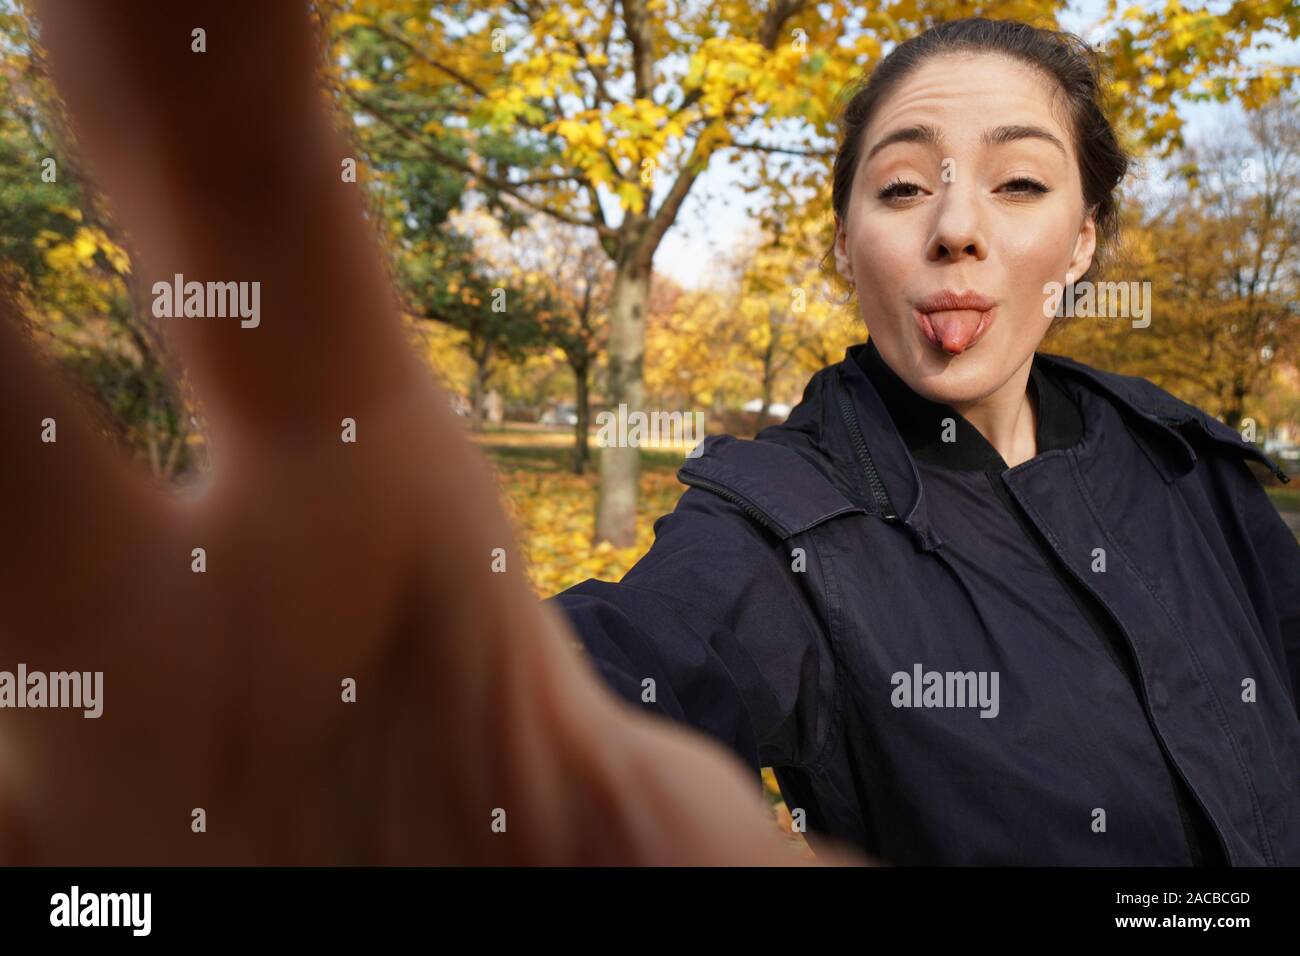 Sassy jeune femme dans la vingtaine, convertible en tenant photo selfies posant en parc avec des couleurs d'automne - prise de vue au grand angle holding smartphone invisible avec bras étendu Banque D'Images